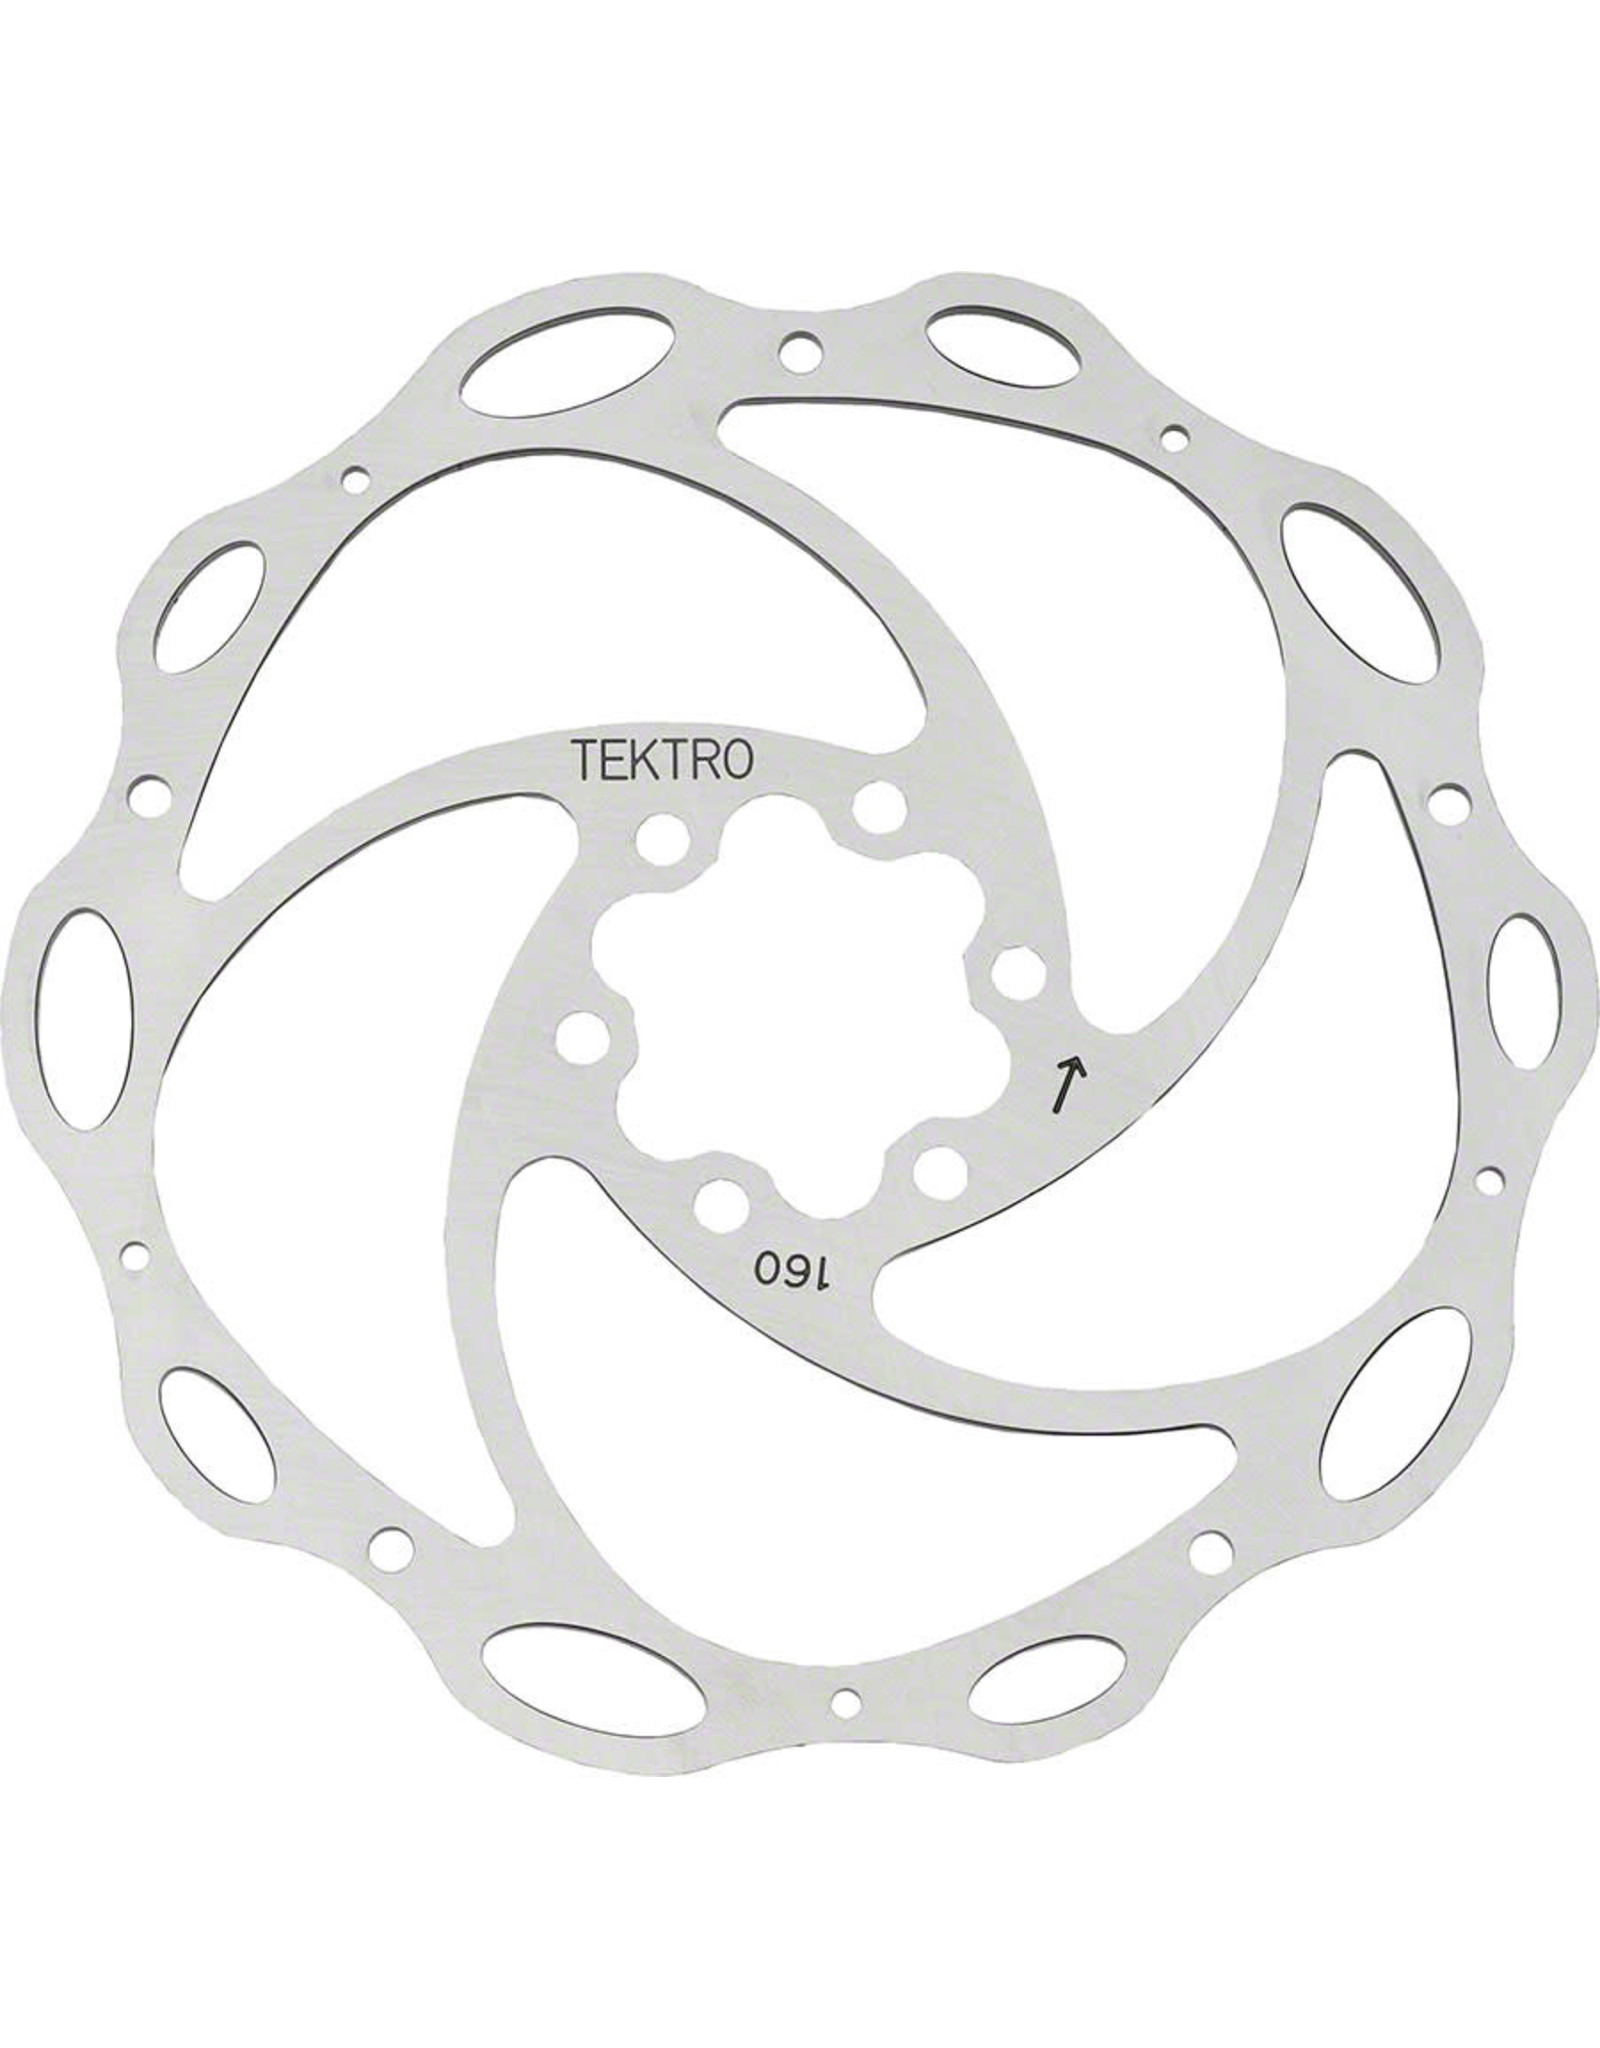 Tektro Tektro Lyra Cross Disc Rotor w/ Bolts